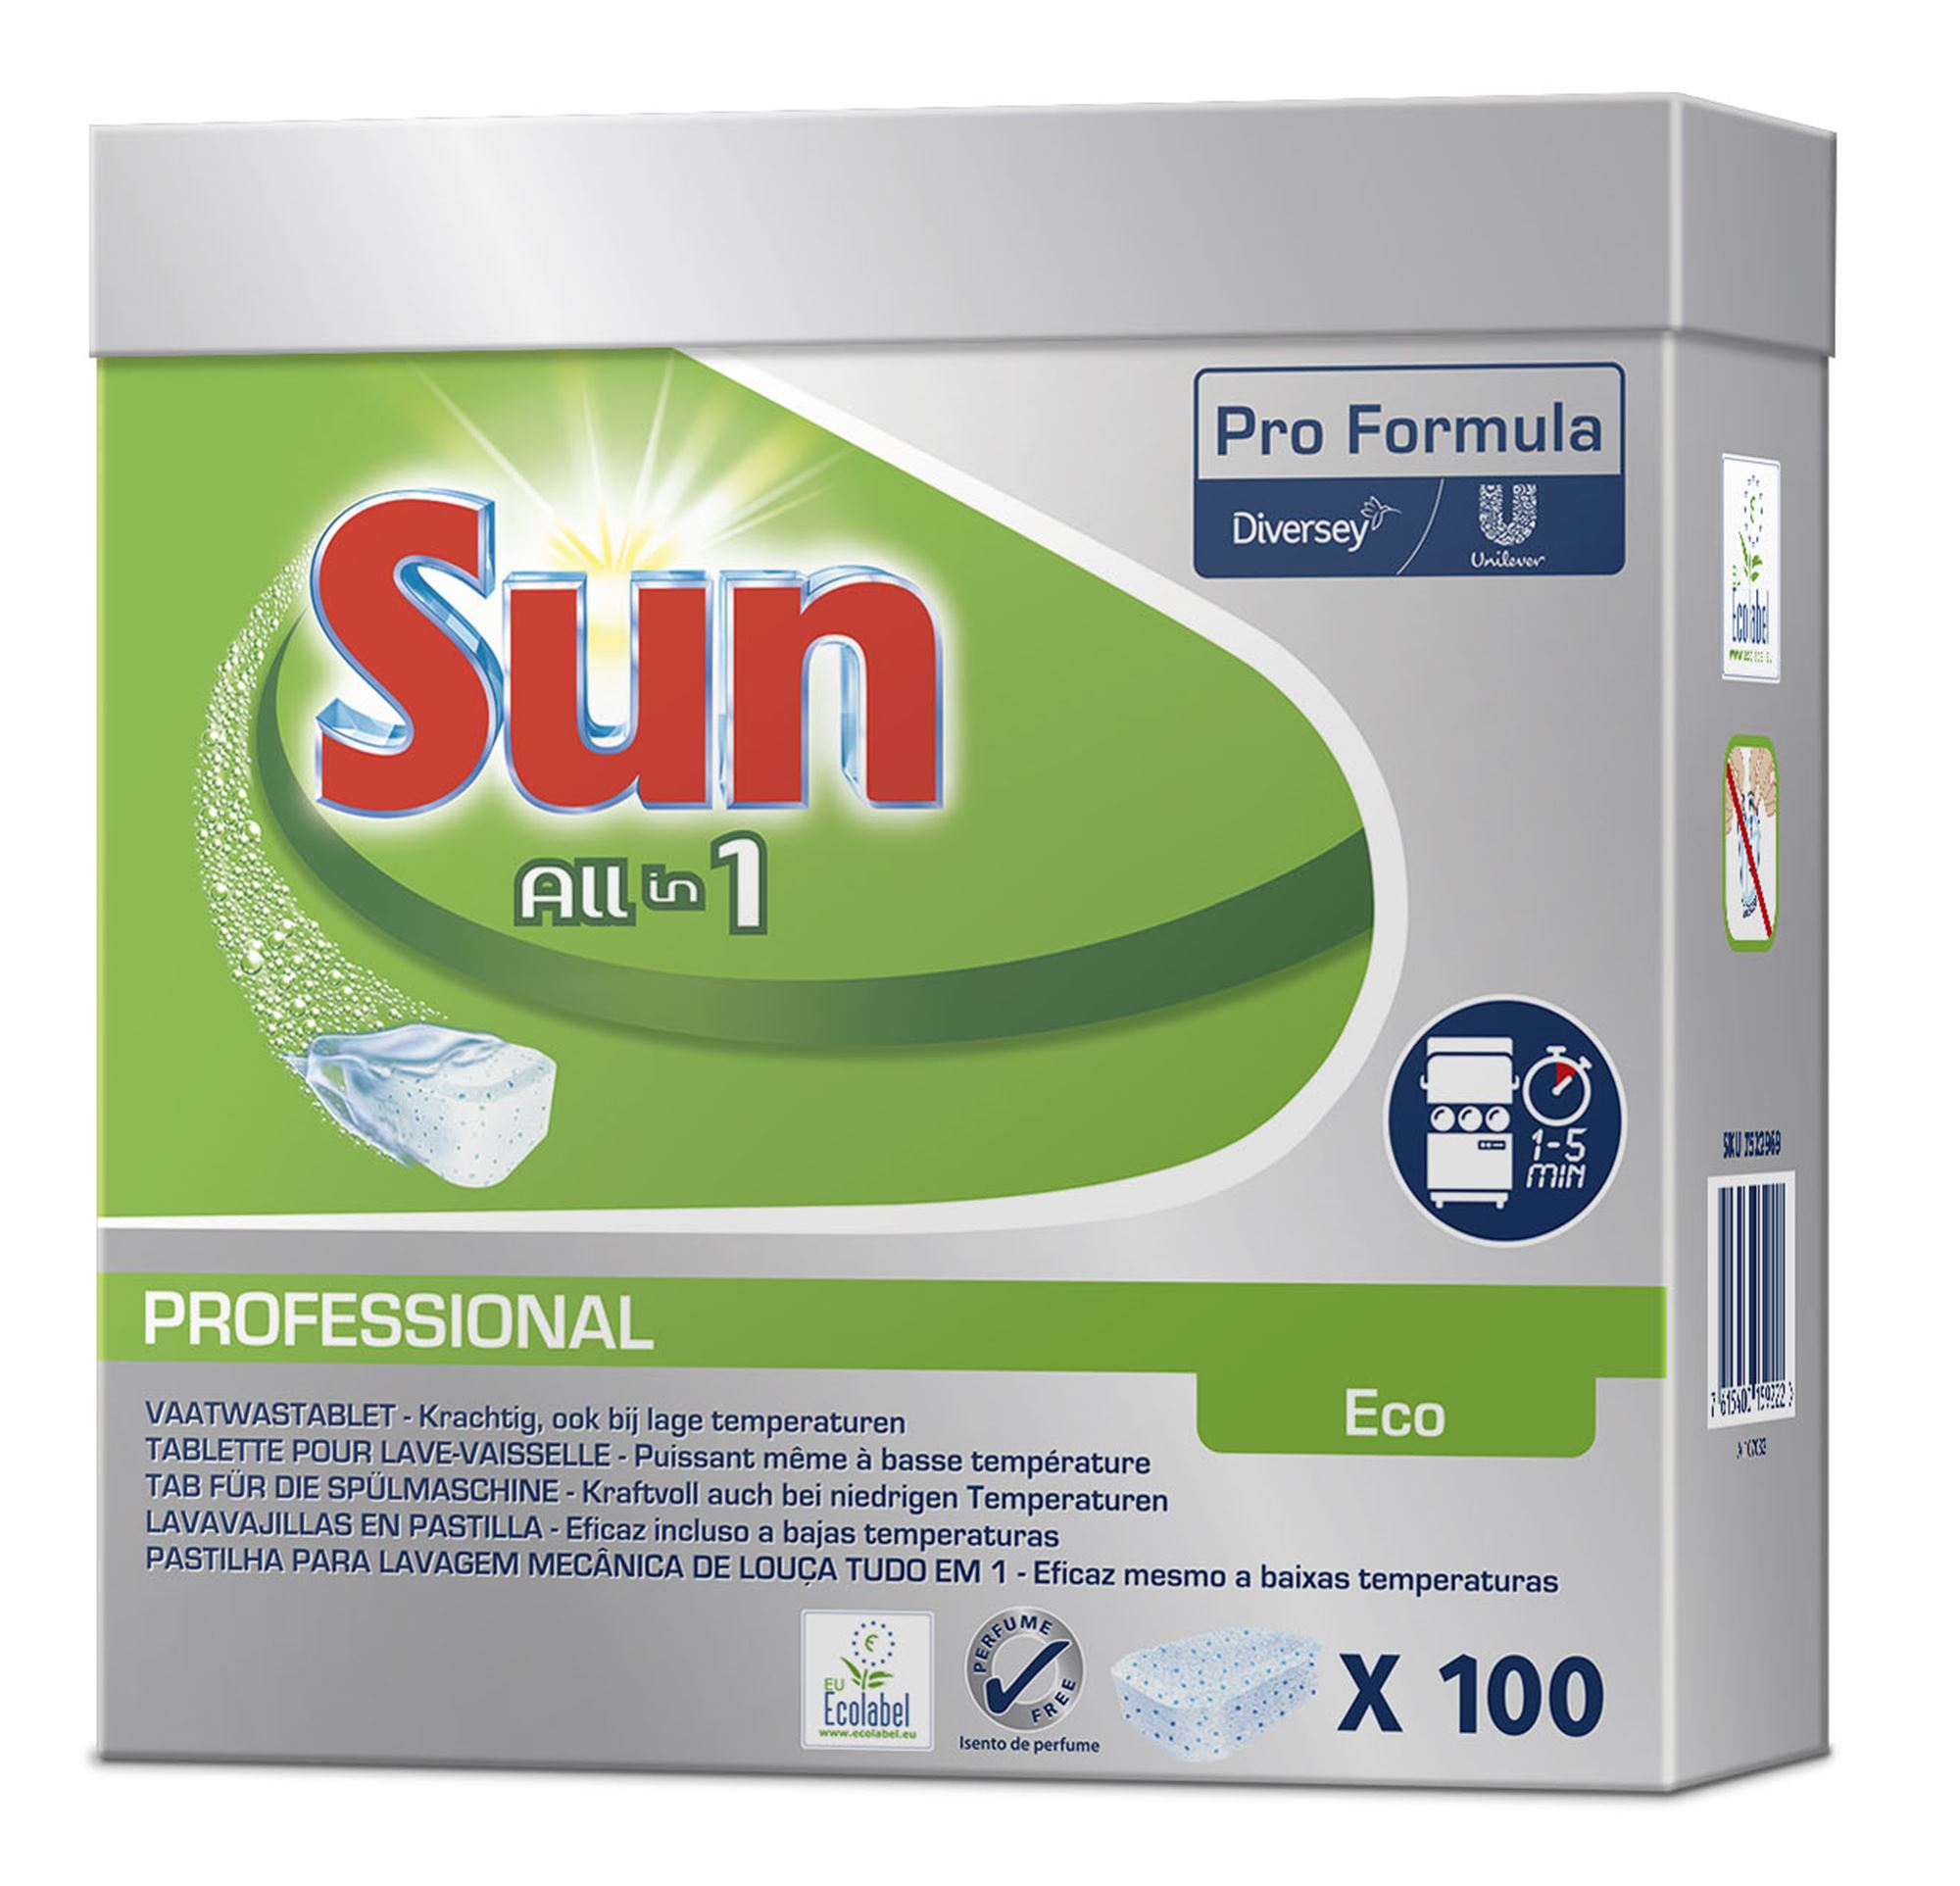 Sun Pro Formula tablettes all in 1 1x200pc - Pastilles pour lave